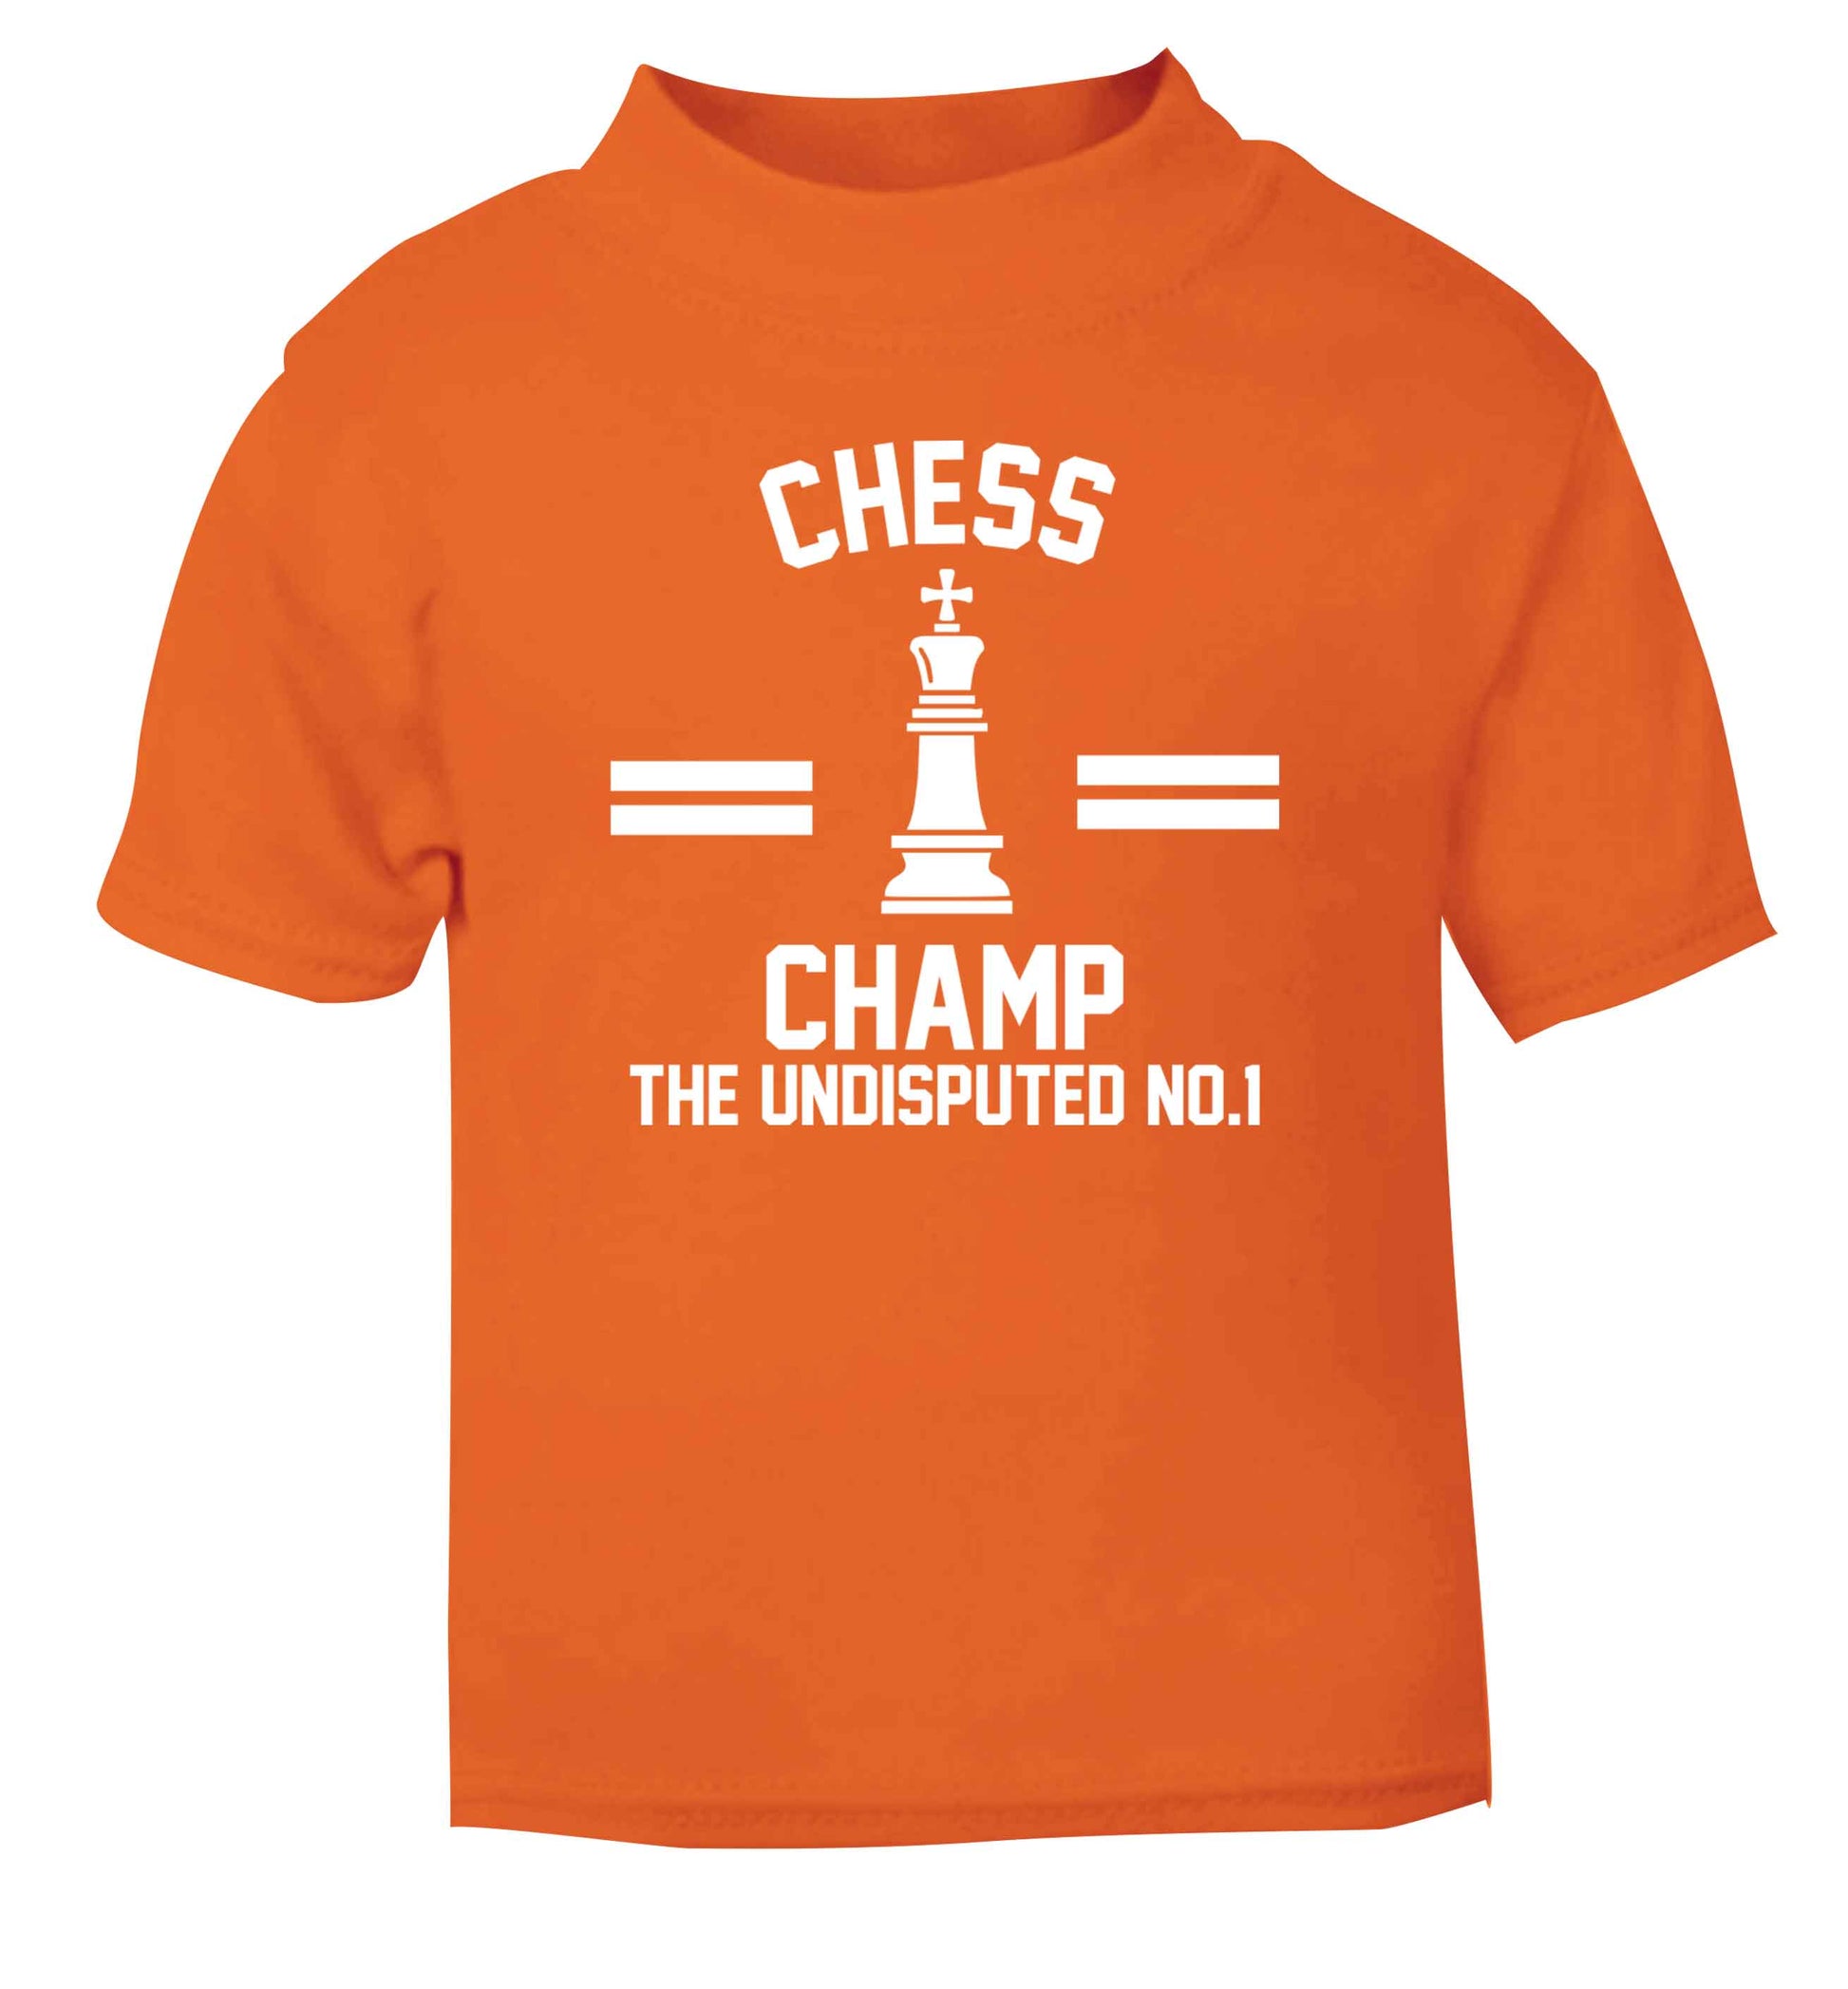 Undisputed chess championship no.1  orange Baby Toddler Tshirt 2 Years